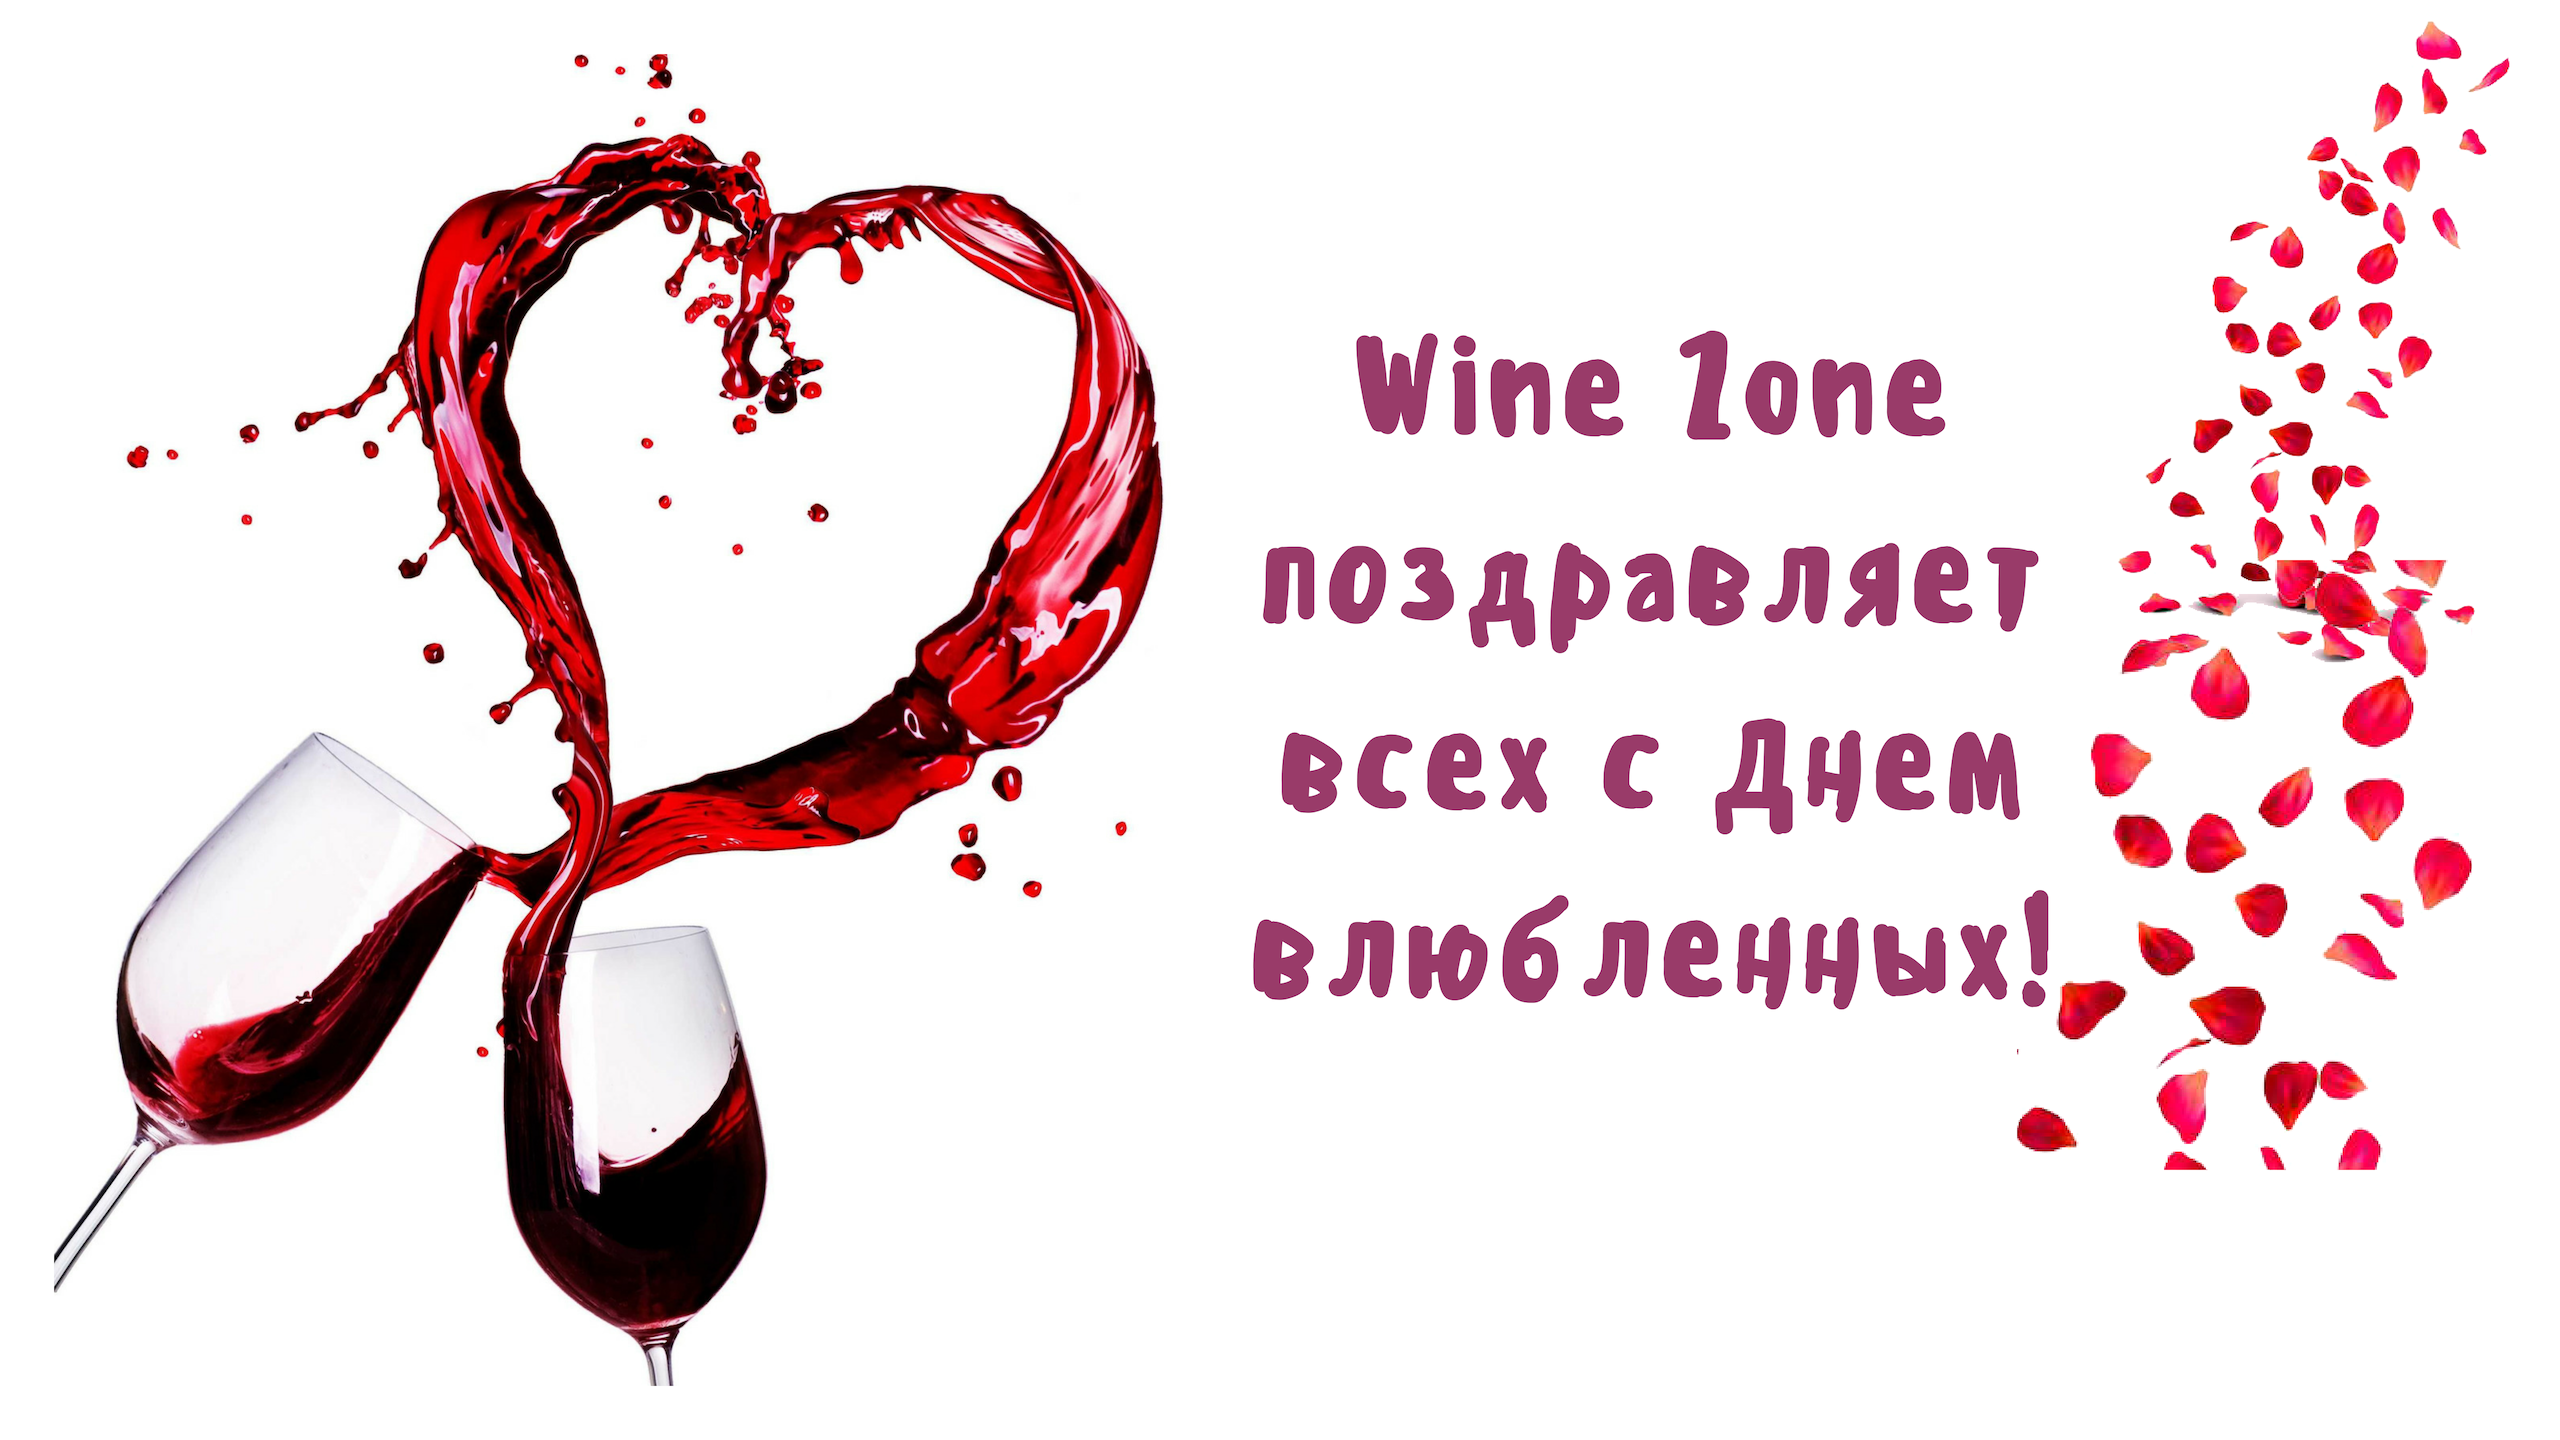 WineZone поздравляет всех с Днем влюбленных!!!